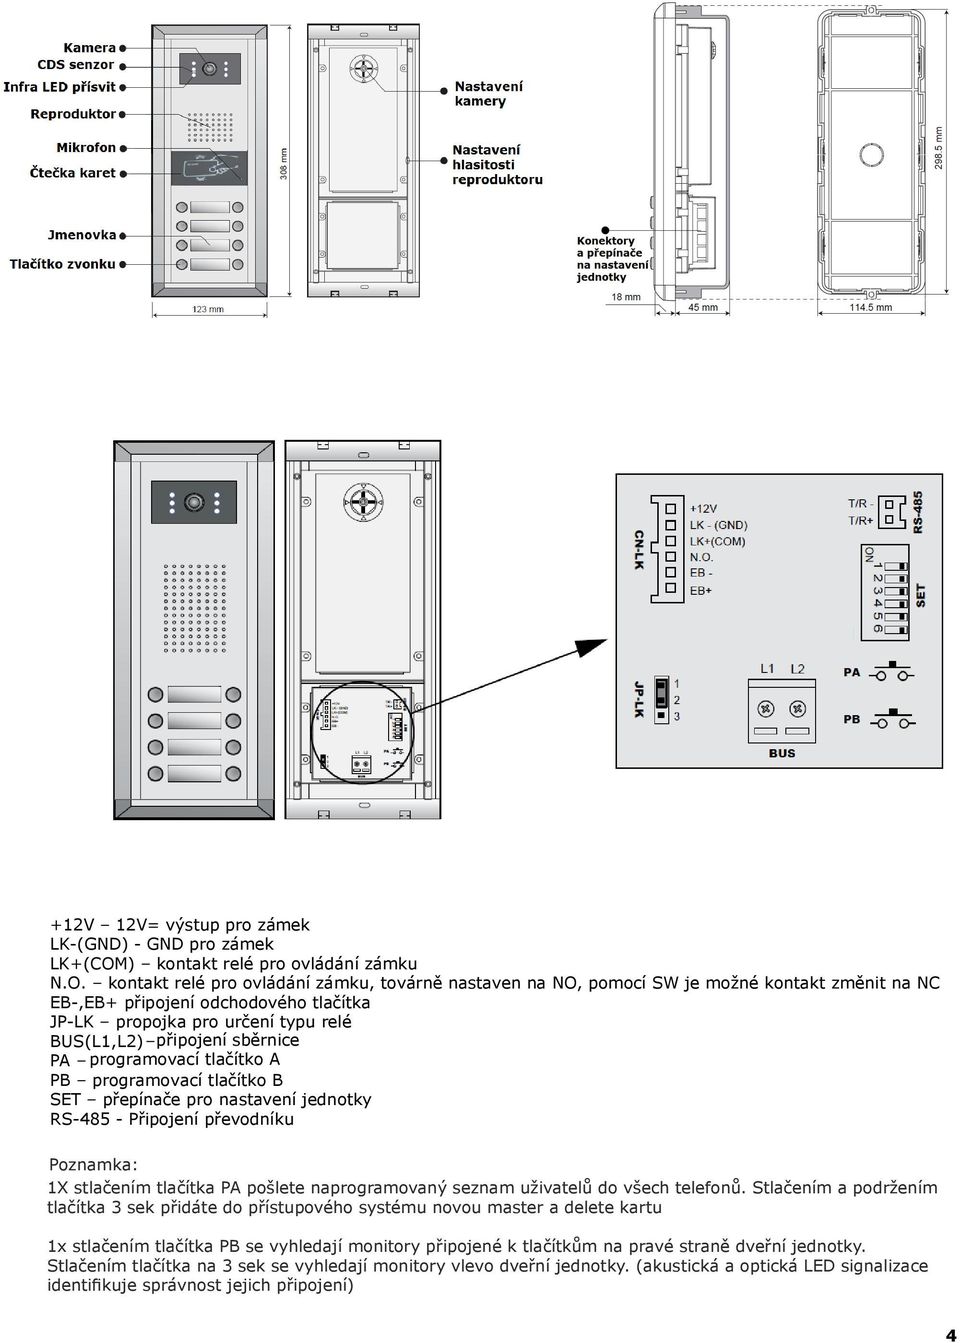 kontakt relé pro ovládání zámku, továrně nastaven na NO, pomocí SW je možné kontakt změnit na NC EB-,EB+ připojení odchodového tlačítka JP-LK propojka pro určení typu relé BUS(L1,L2) připojení